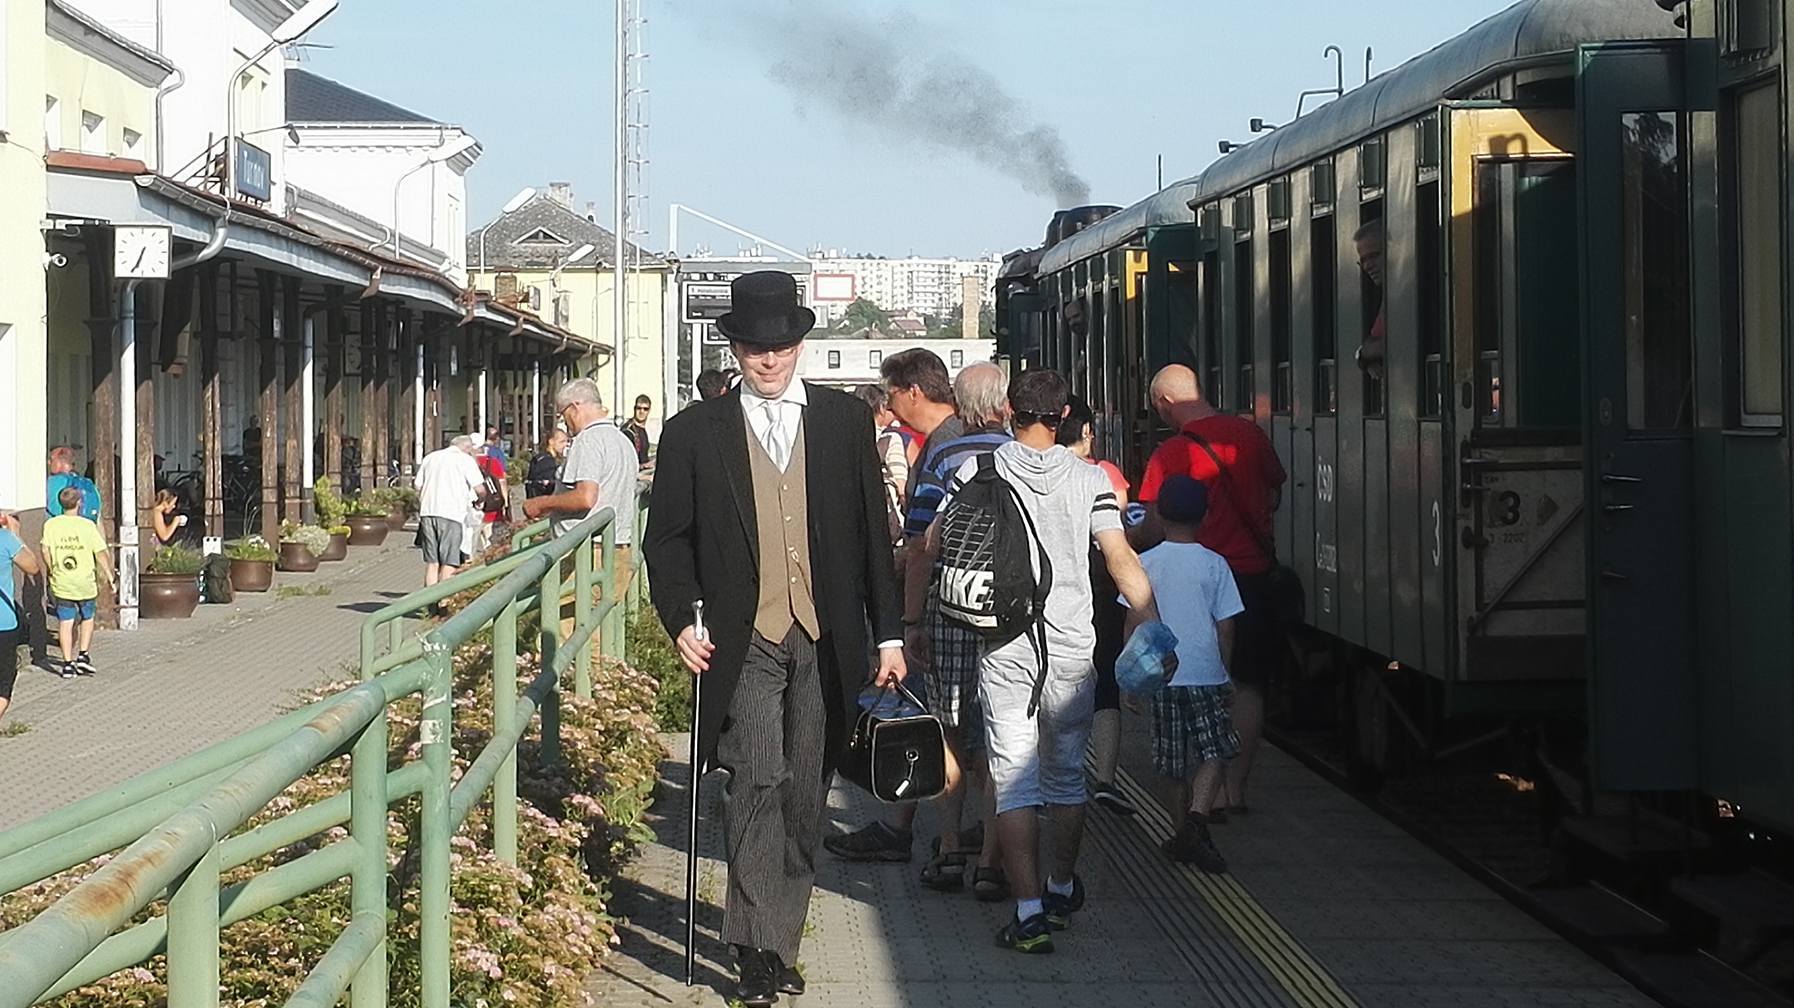 Zastávka parního vlaku v Turnově<br />Autor: Rudolf Kojak